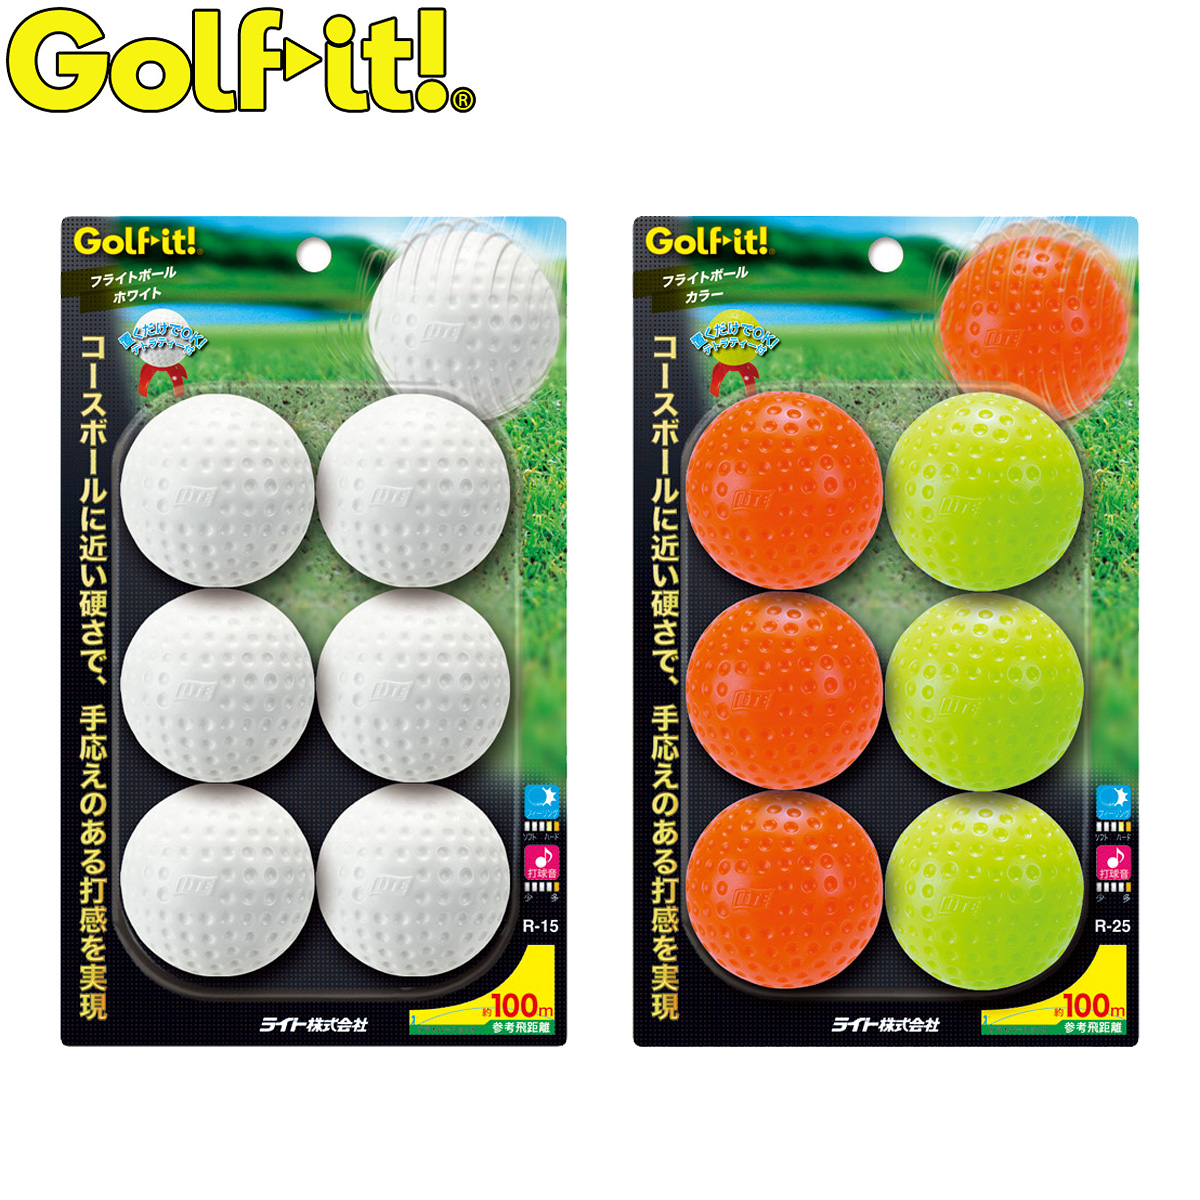 国内送料無料 コースボールに近い硬さで 手応えのある打感 Golfit ゴルフイット LiTE ライト フライトボール 日本正規品 プラクティスボール お歳暮 6個入り